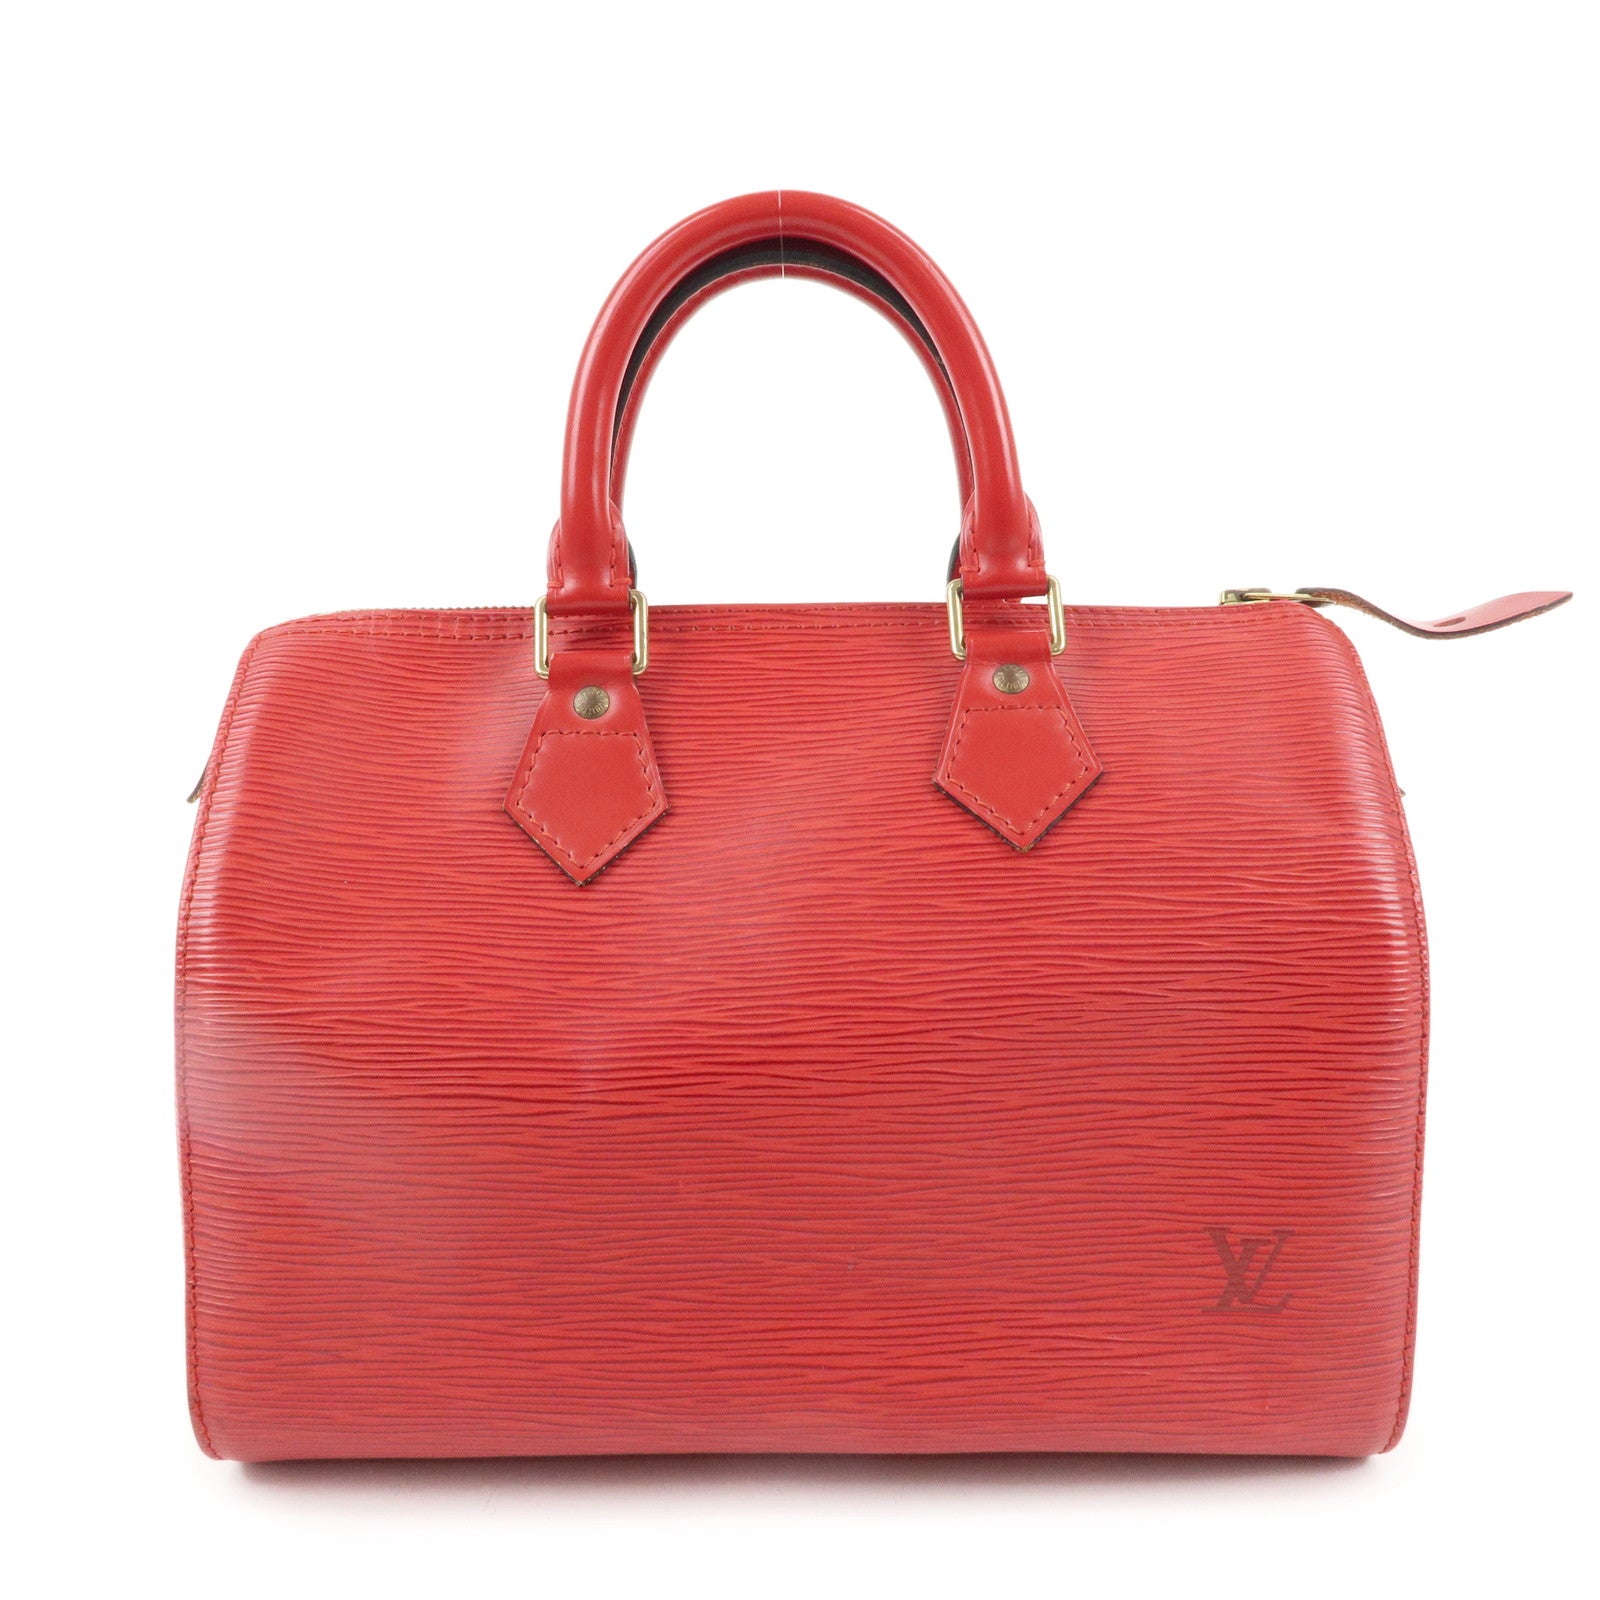 Louis Vuitton Speedy 25 Castilian Red Epi